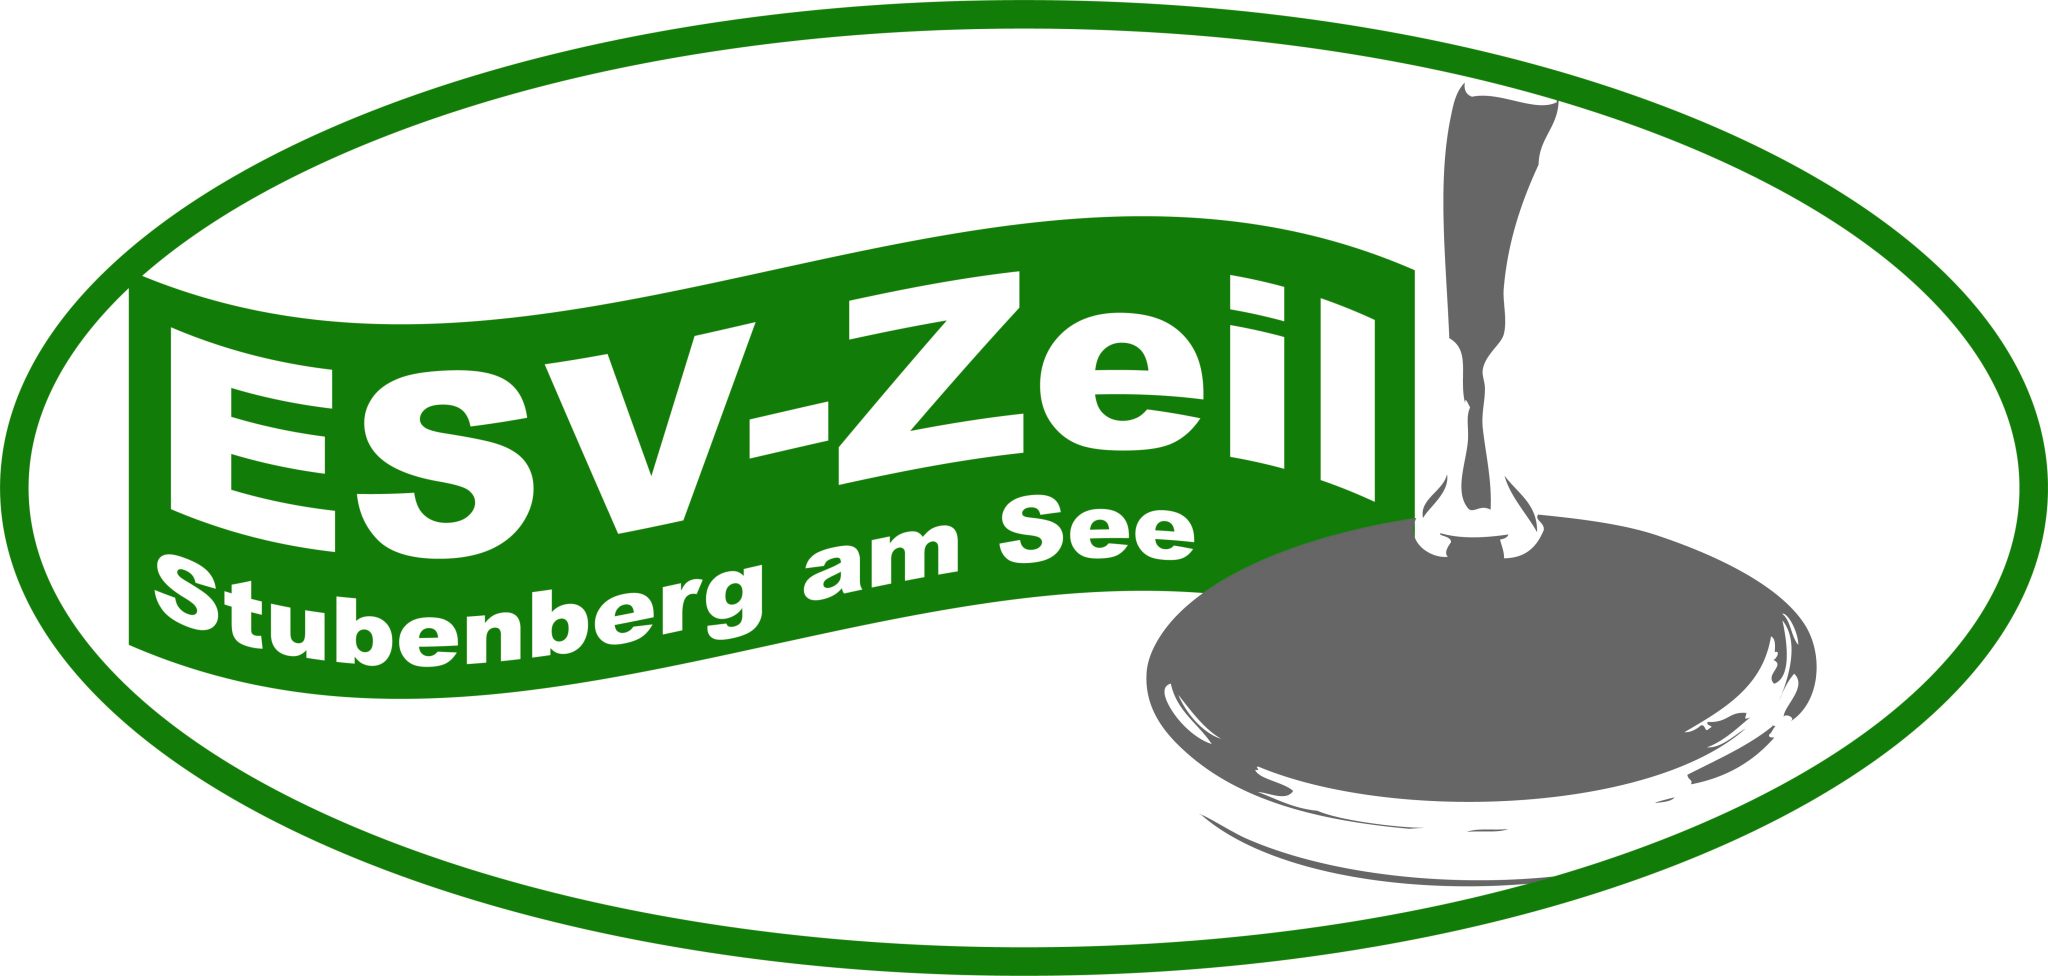 ESV Zeil Stubenberg 1 (ST)